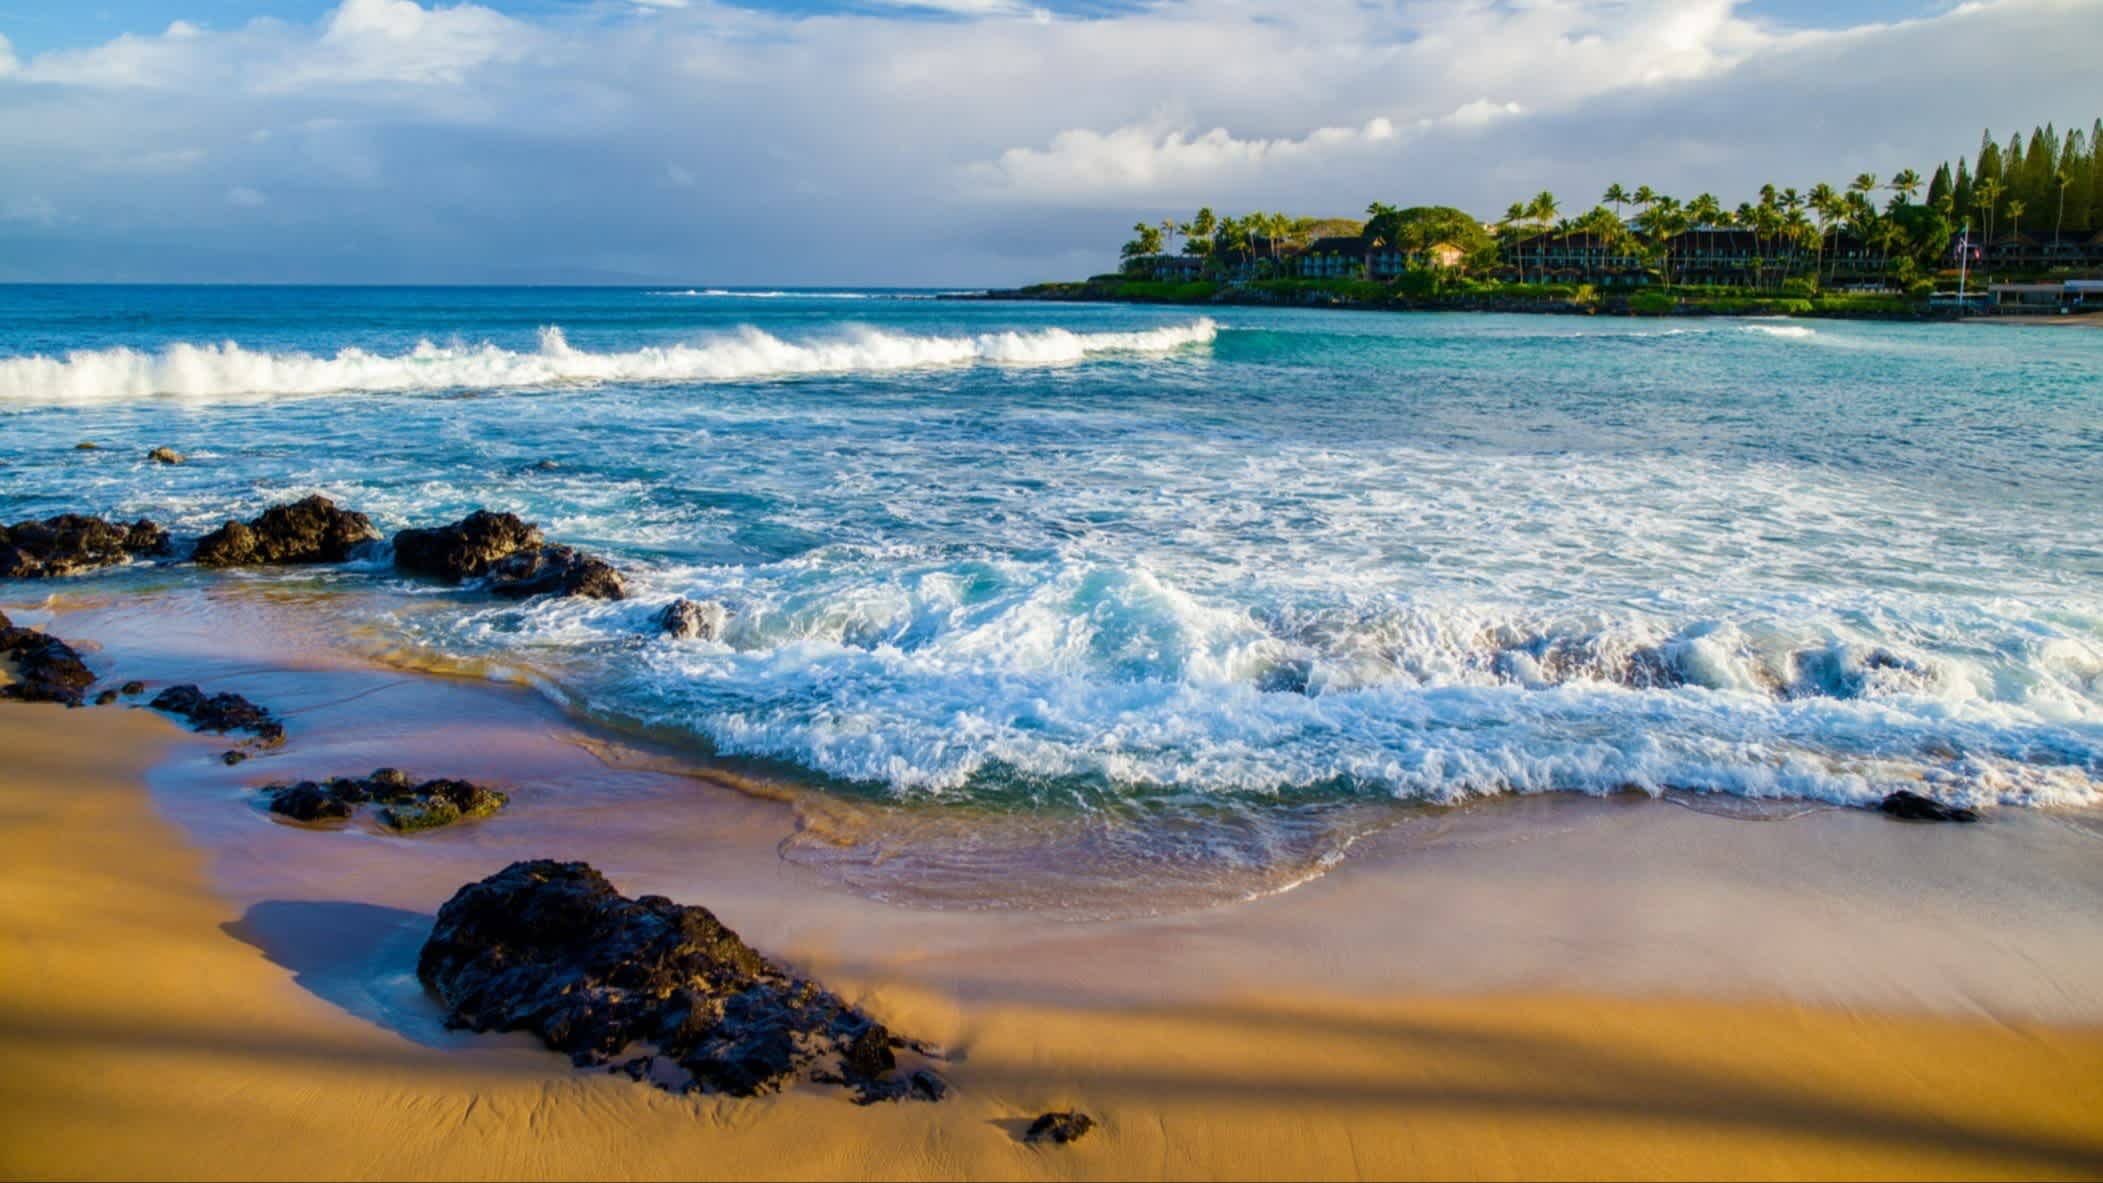 Der Strand Napili Bay, Maui, Hawaii, USA bei Sonnenschein und mit Blick auf das wellige Meer mit Bäumen im Hintergrund.